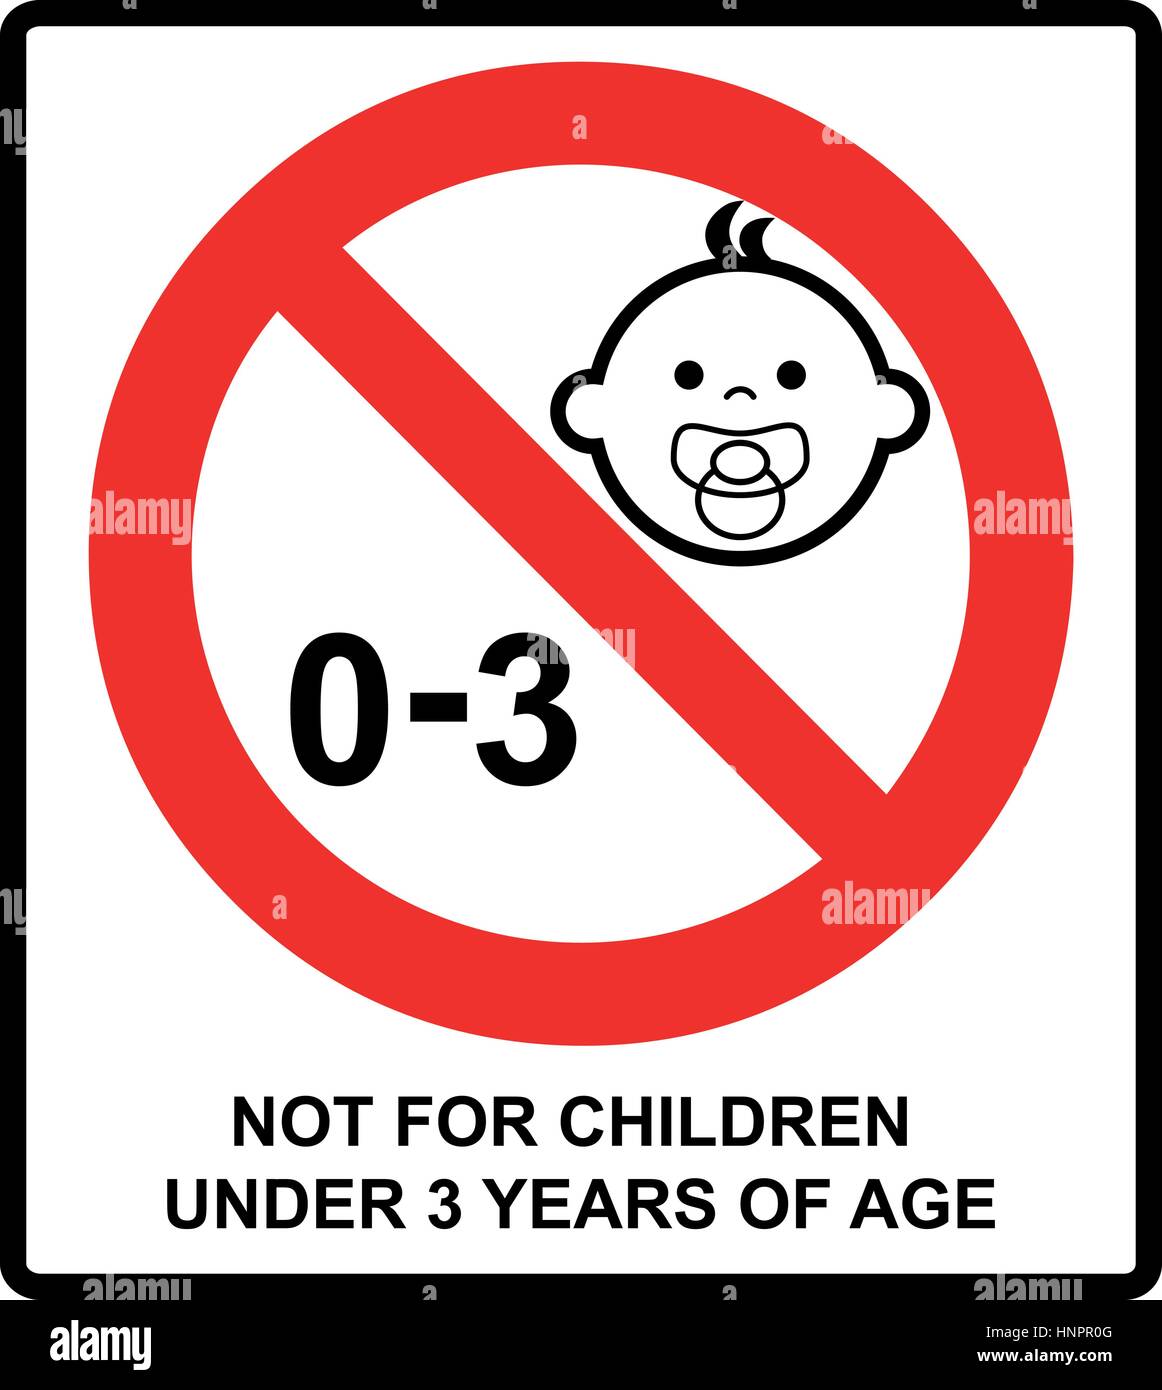 Signe d'interdiction pour les enfants.Pas pour les enfants de moins de 3 ans signe. Vector illustration. Cercle d'interdiction rouge isolé sur blanc. Stick d'avertissement Illustration de Vecteur